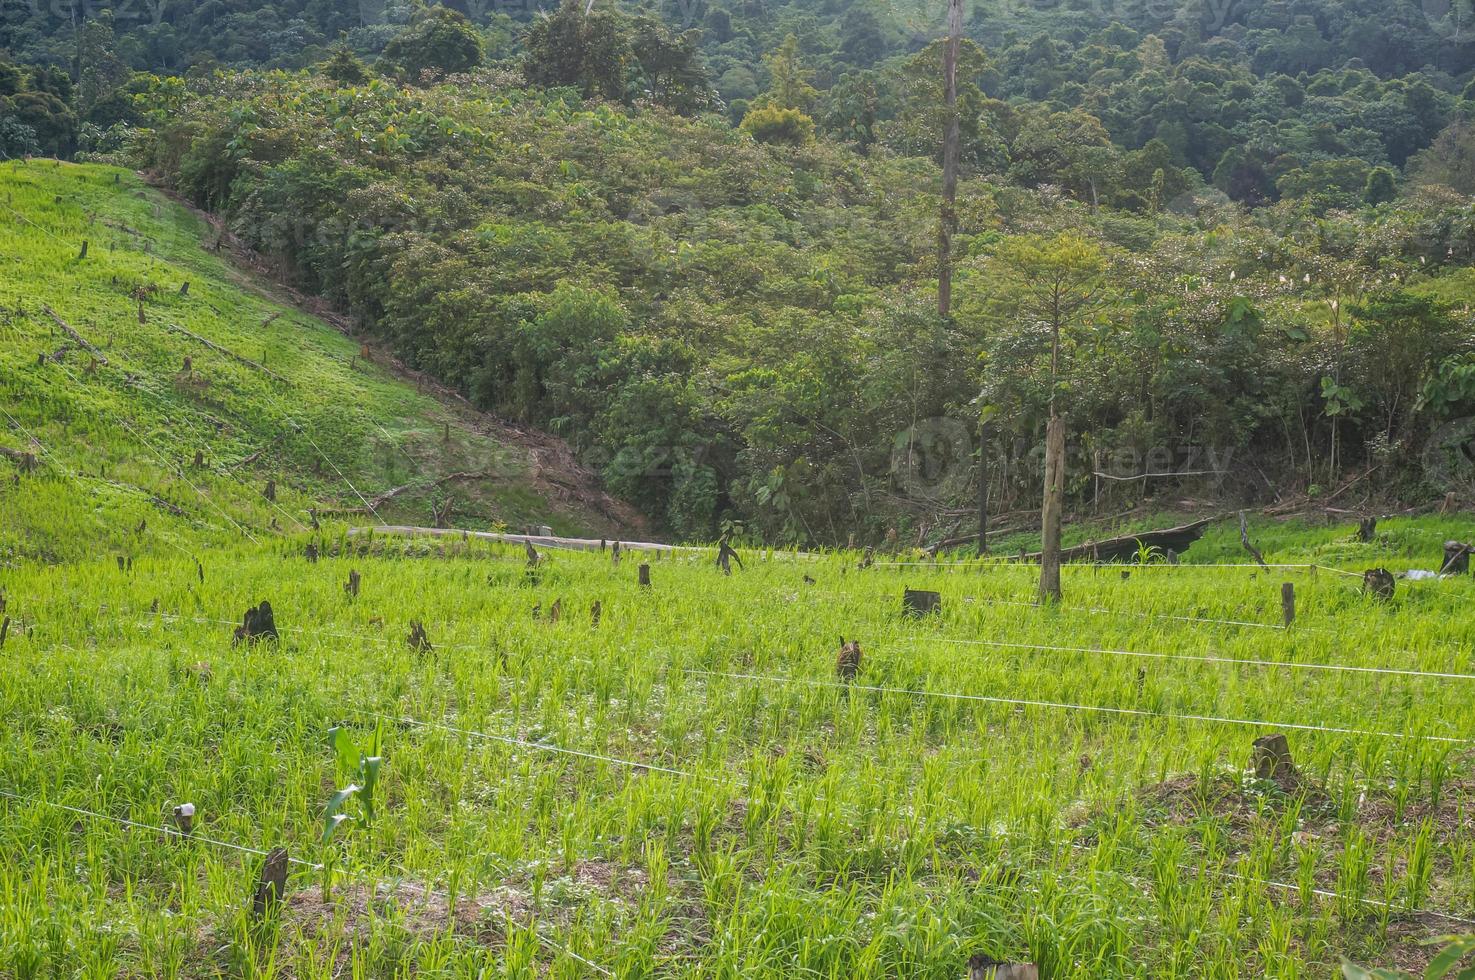 plantar arroz en una colina es una tradición de la tribu dayak, indonesia foto